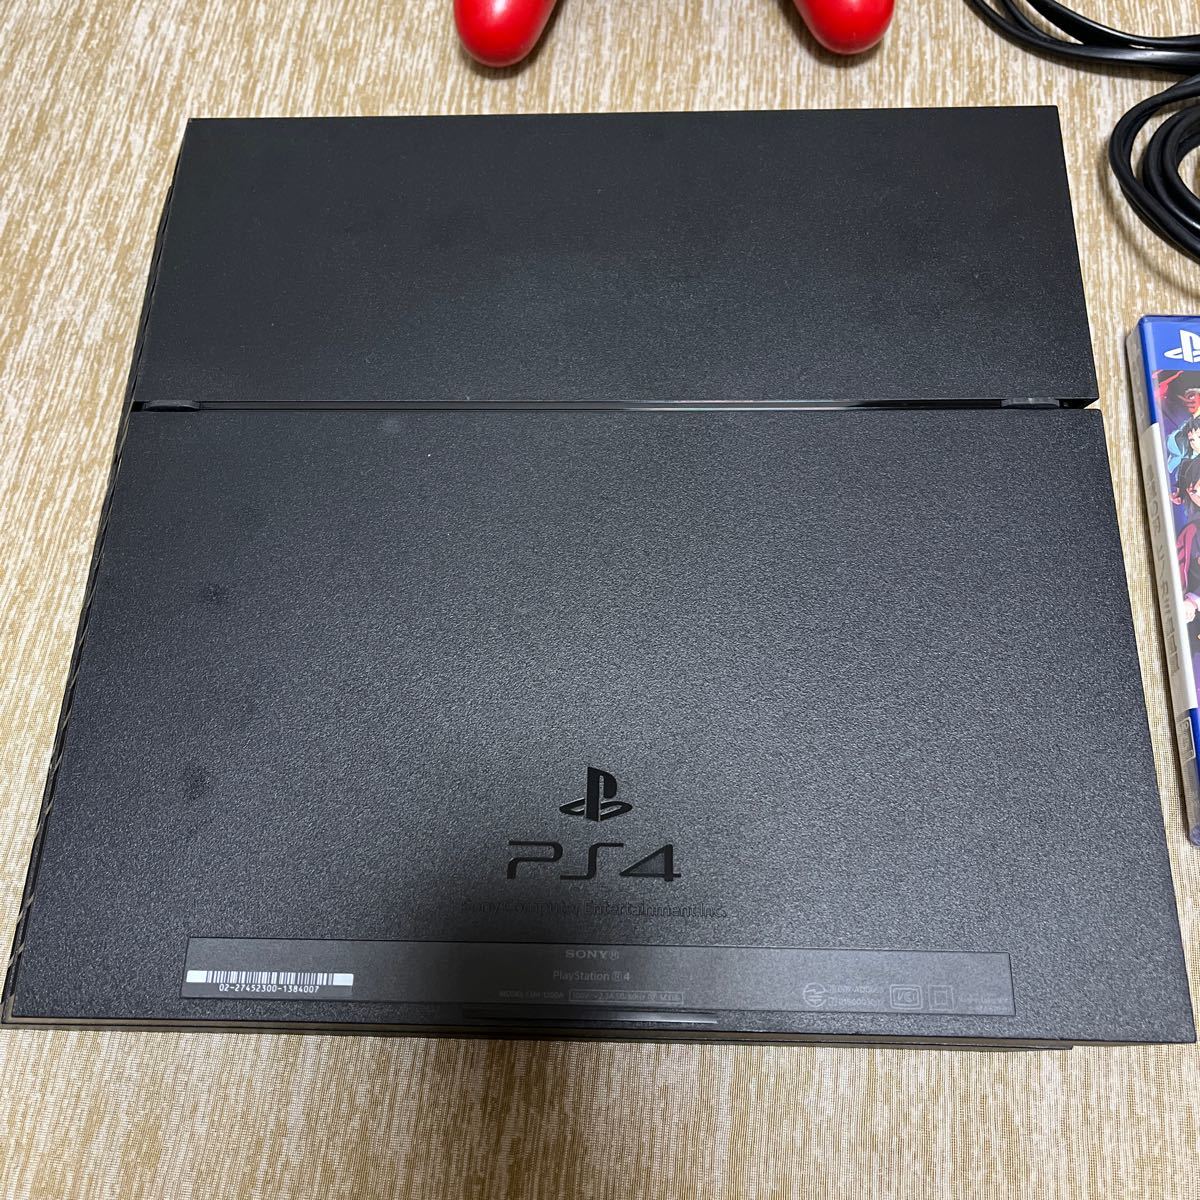 中古PlayStation4ジェットブラックCUH-1200A 500G